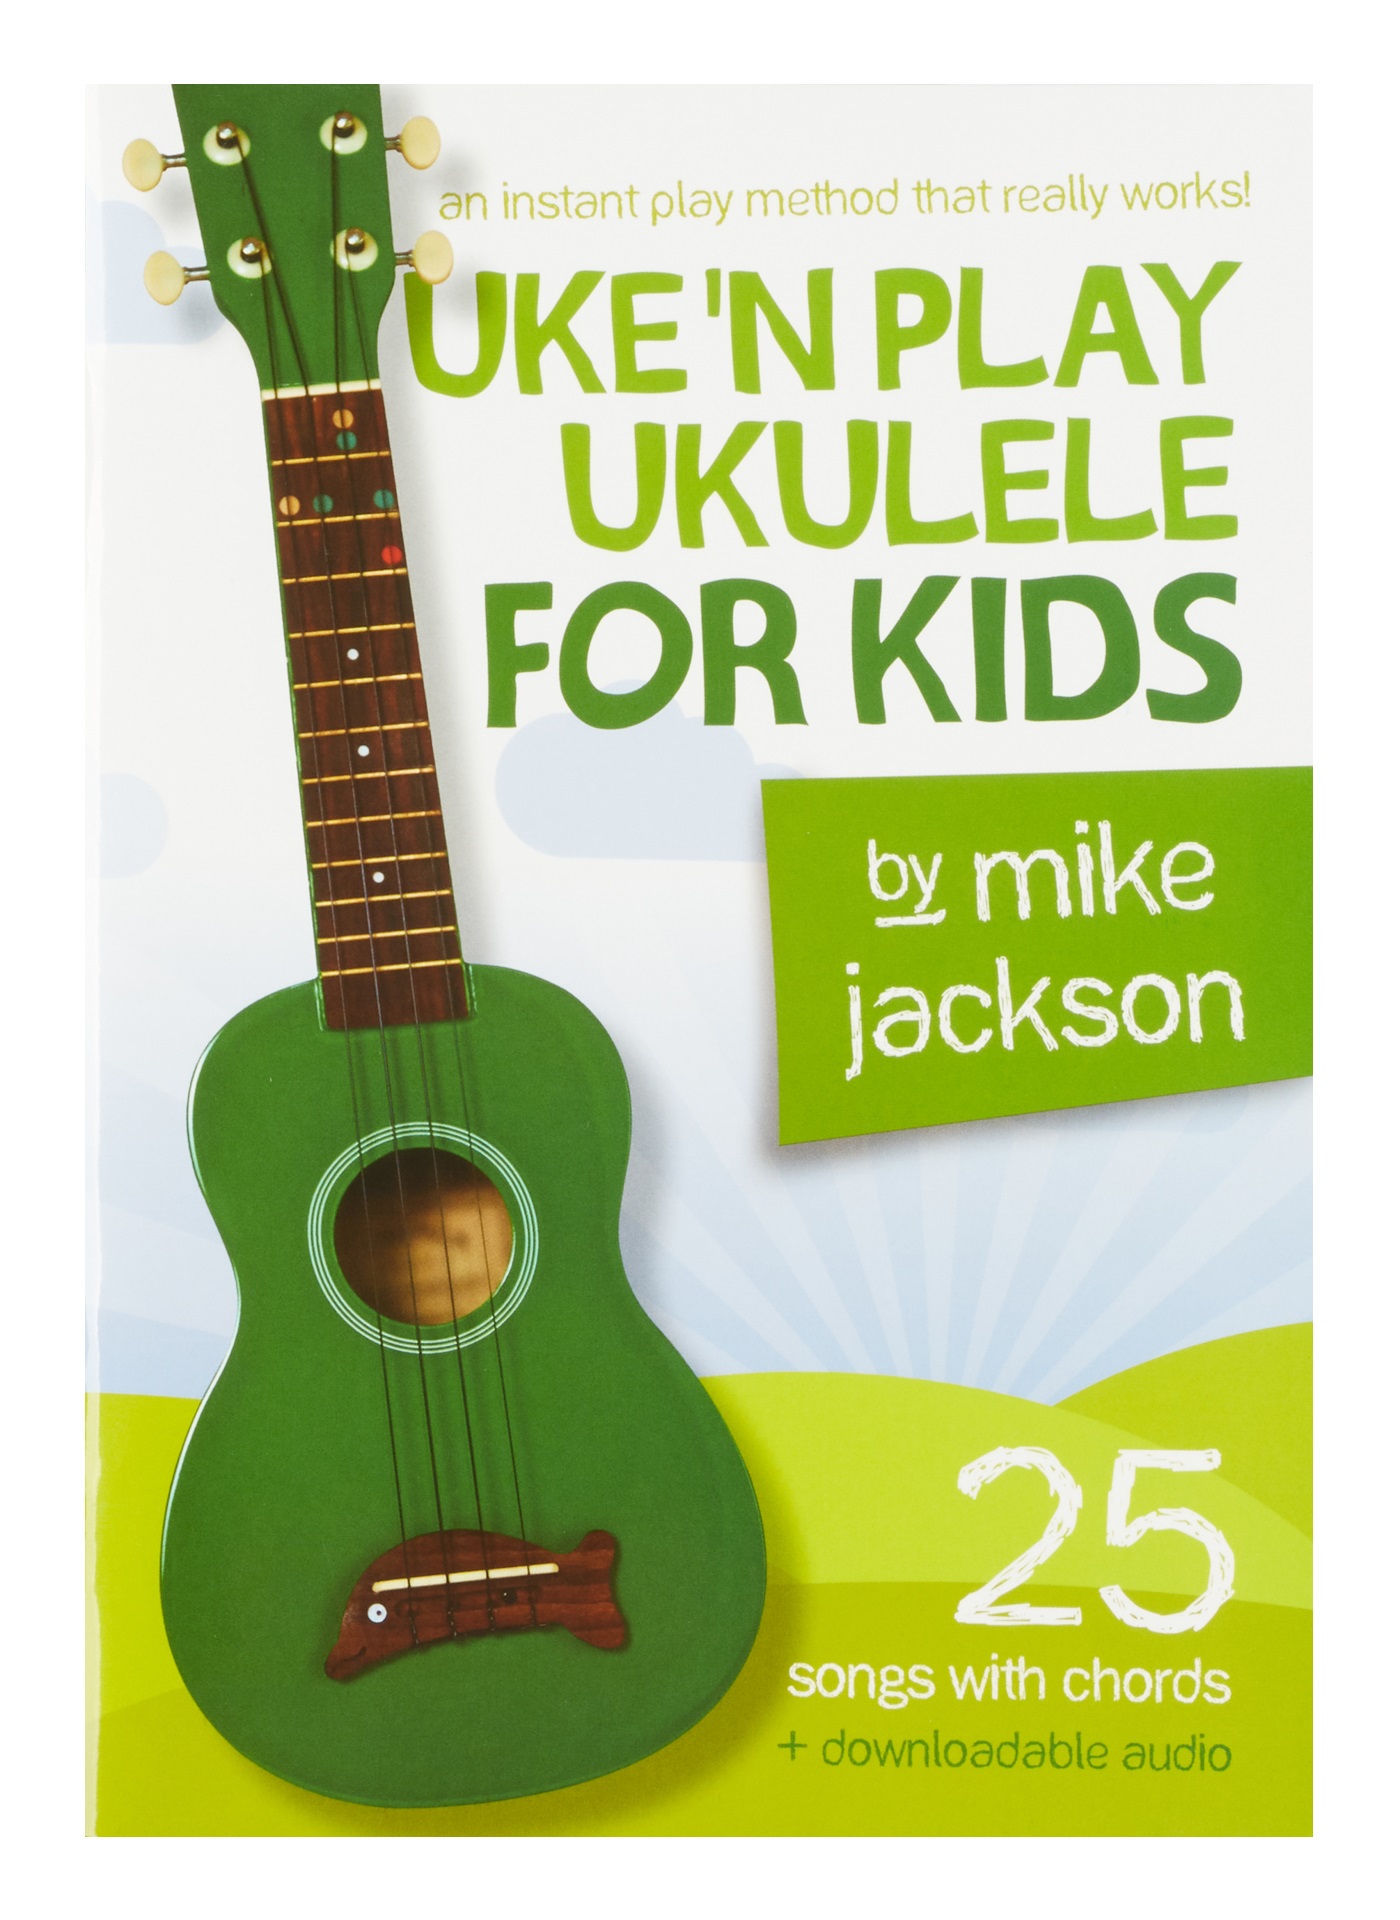 MS Mike Jackson: Uke'n Play Ukulele For Kids